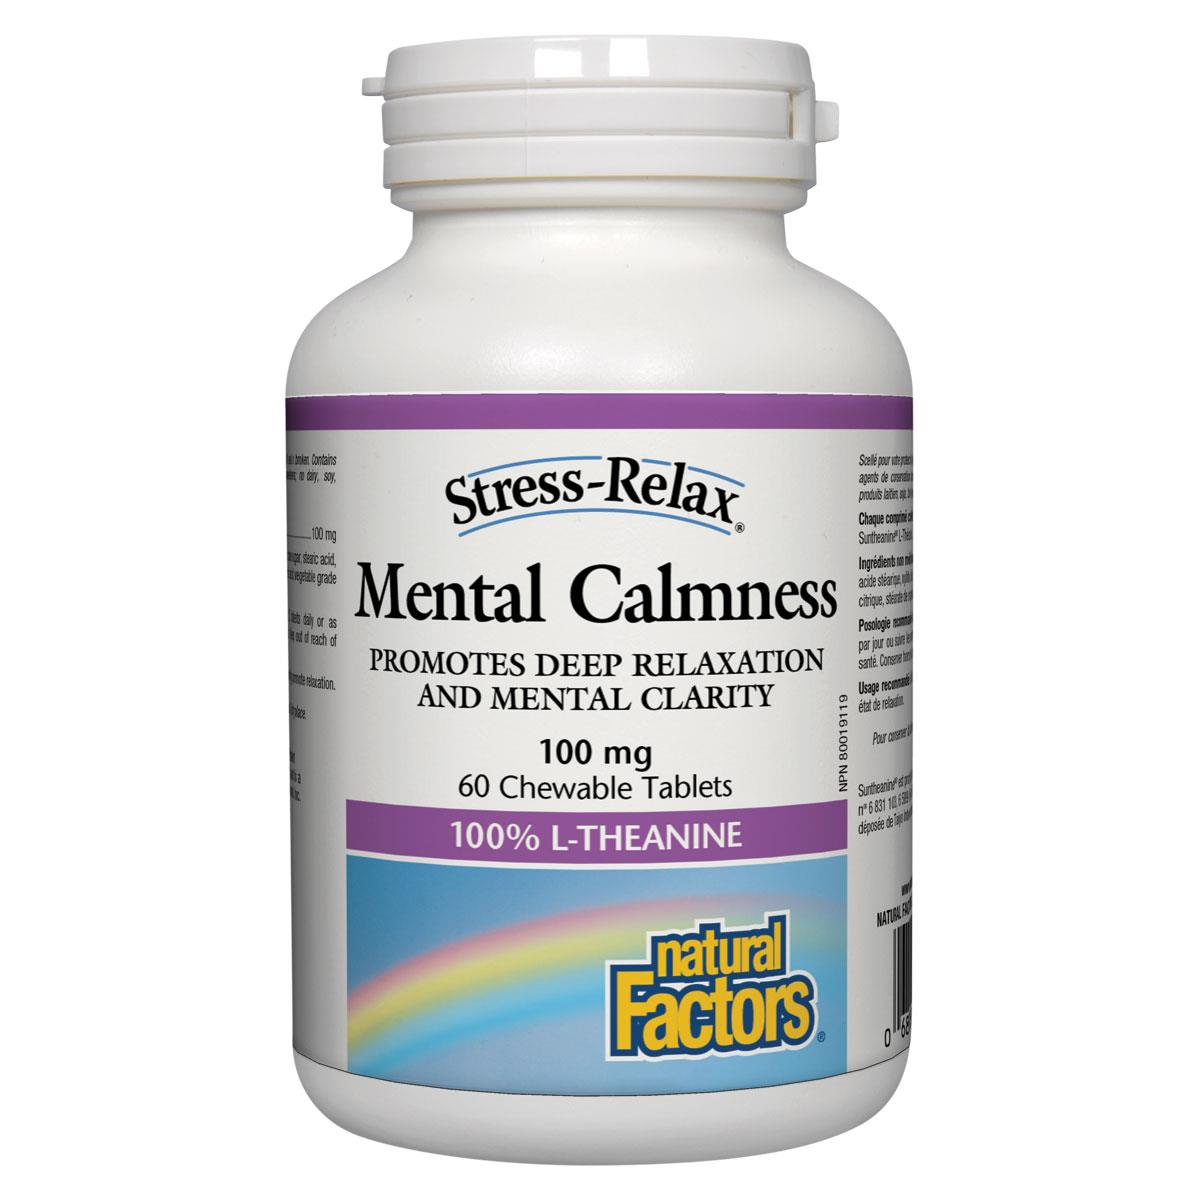 Natural Factors Mental Calmness, 100mg, 60 Chewable Tablets